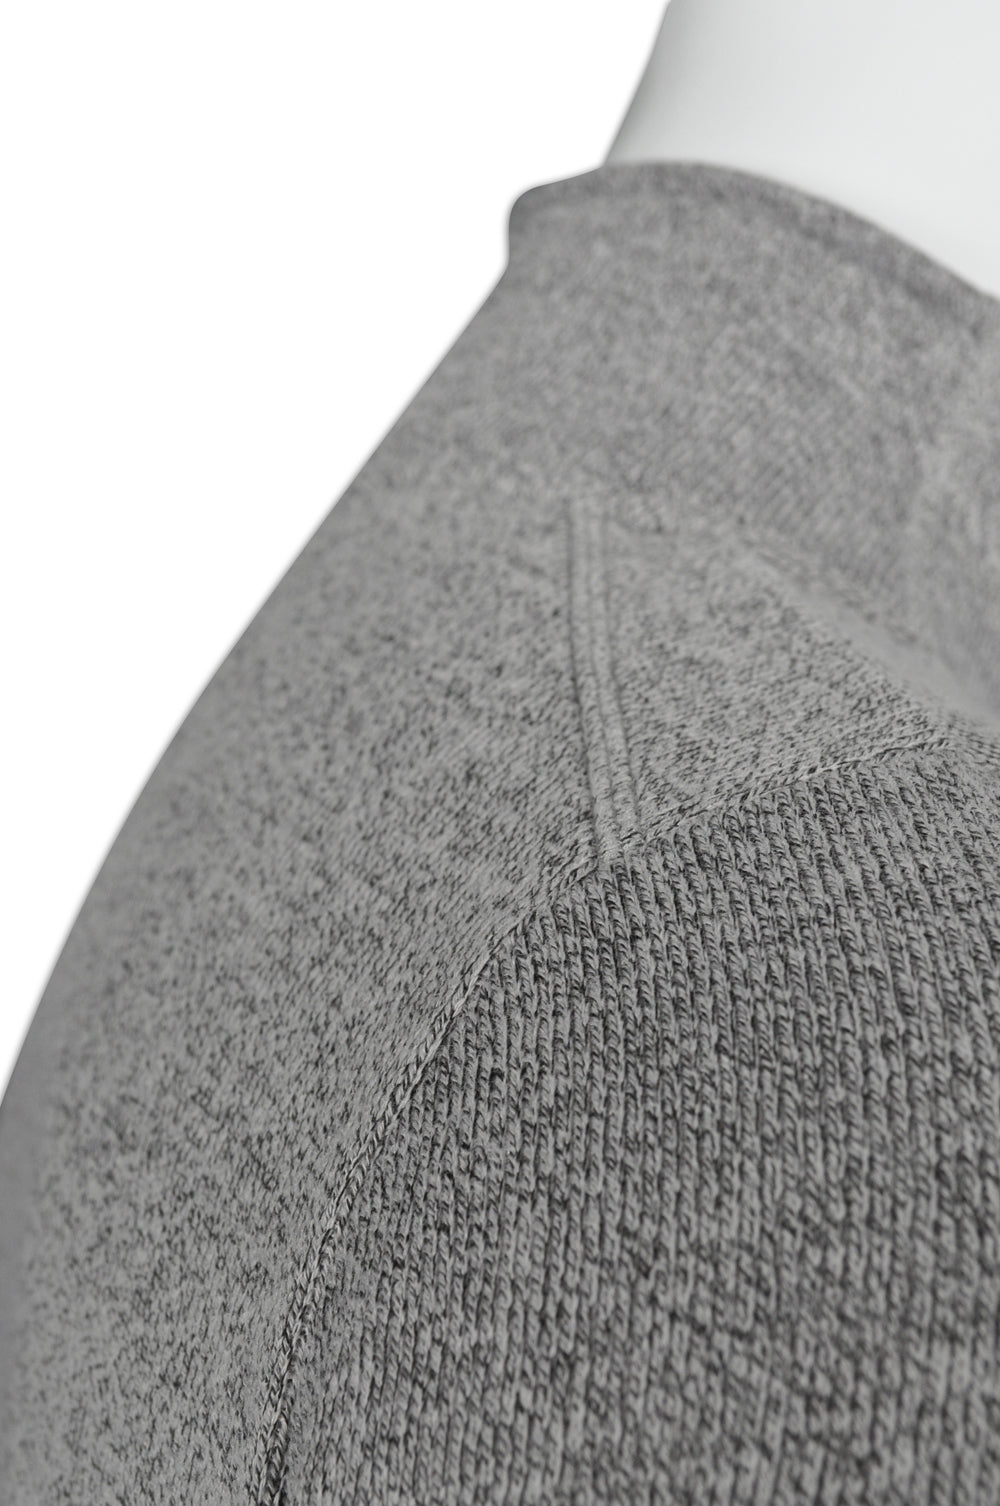 W186設計吸濕排汗男士運動衫 長袖貼身 緊身 秋冬 供應透氣修身運動衫 訂購時尚運動衫 功能性運動衫中心 花灰色 撞色黑色